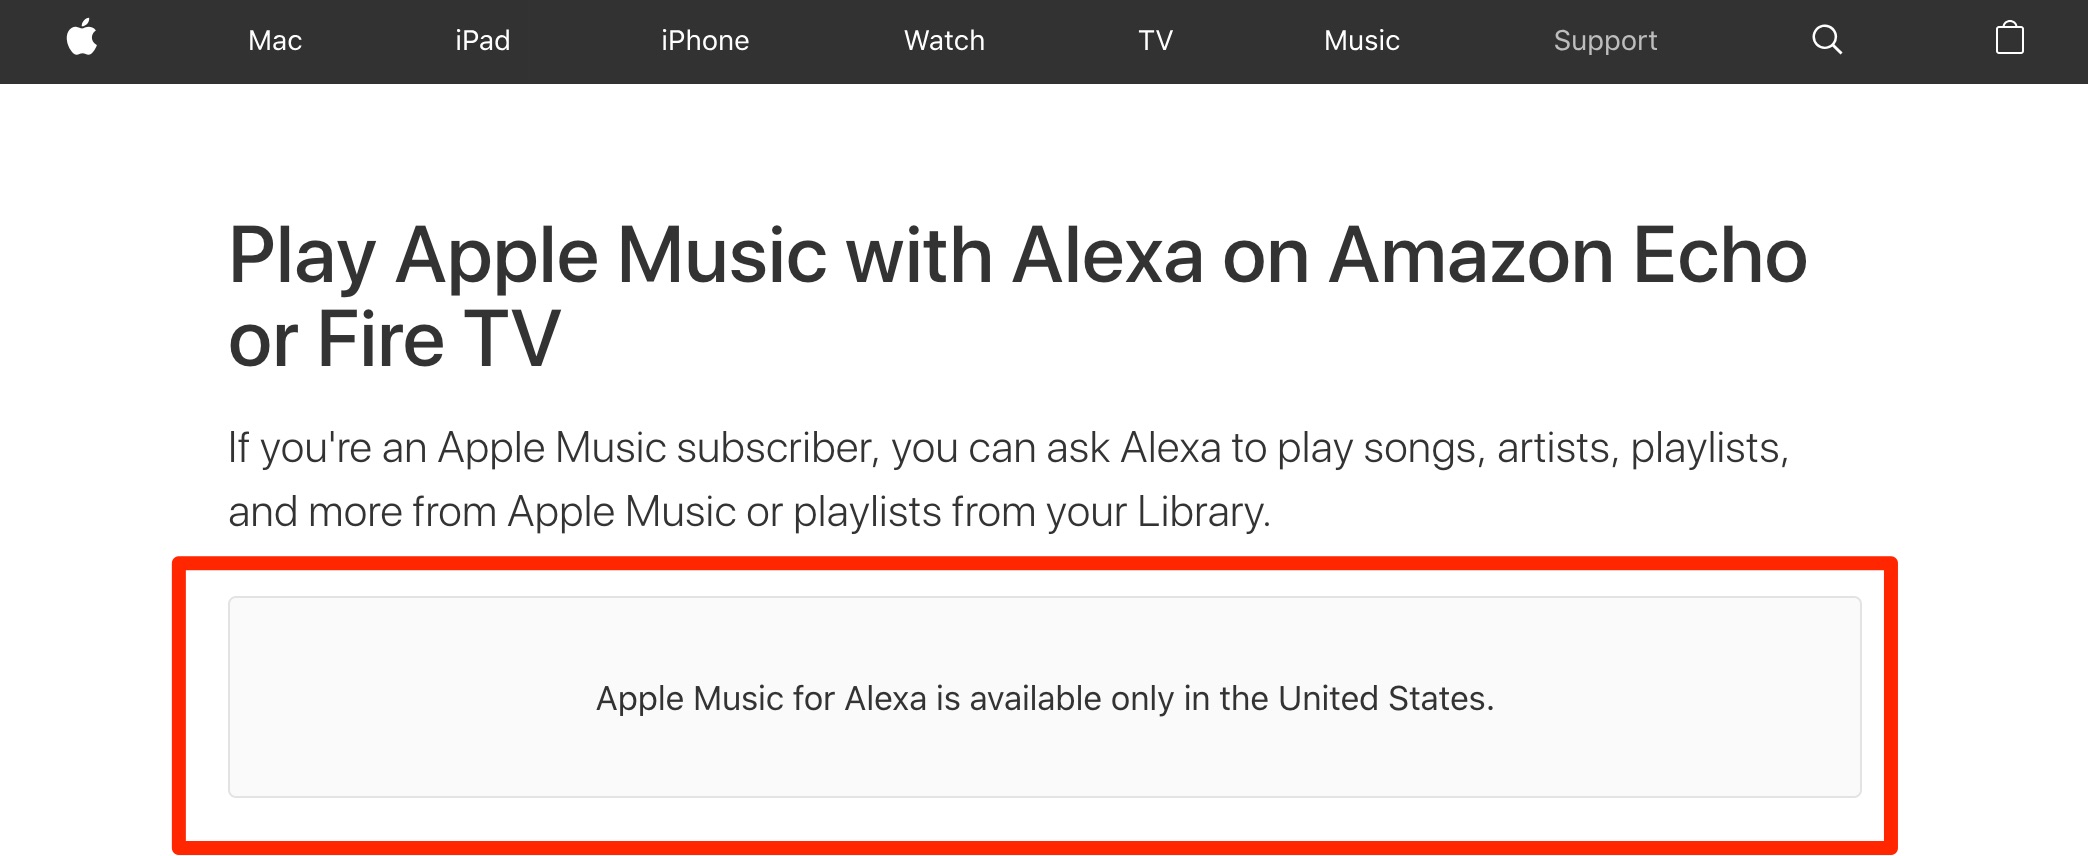 Aviso de que Apple Music para Echo y Fire TV sólo está disponible en EEUU